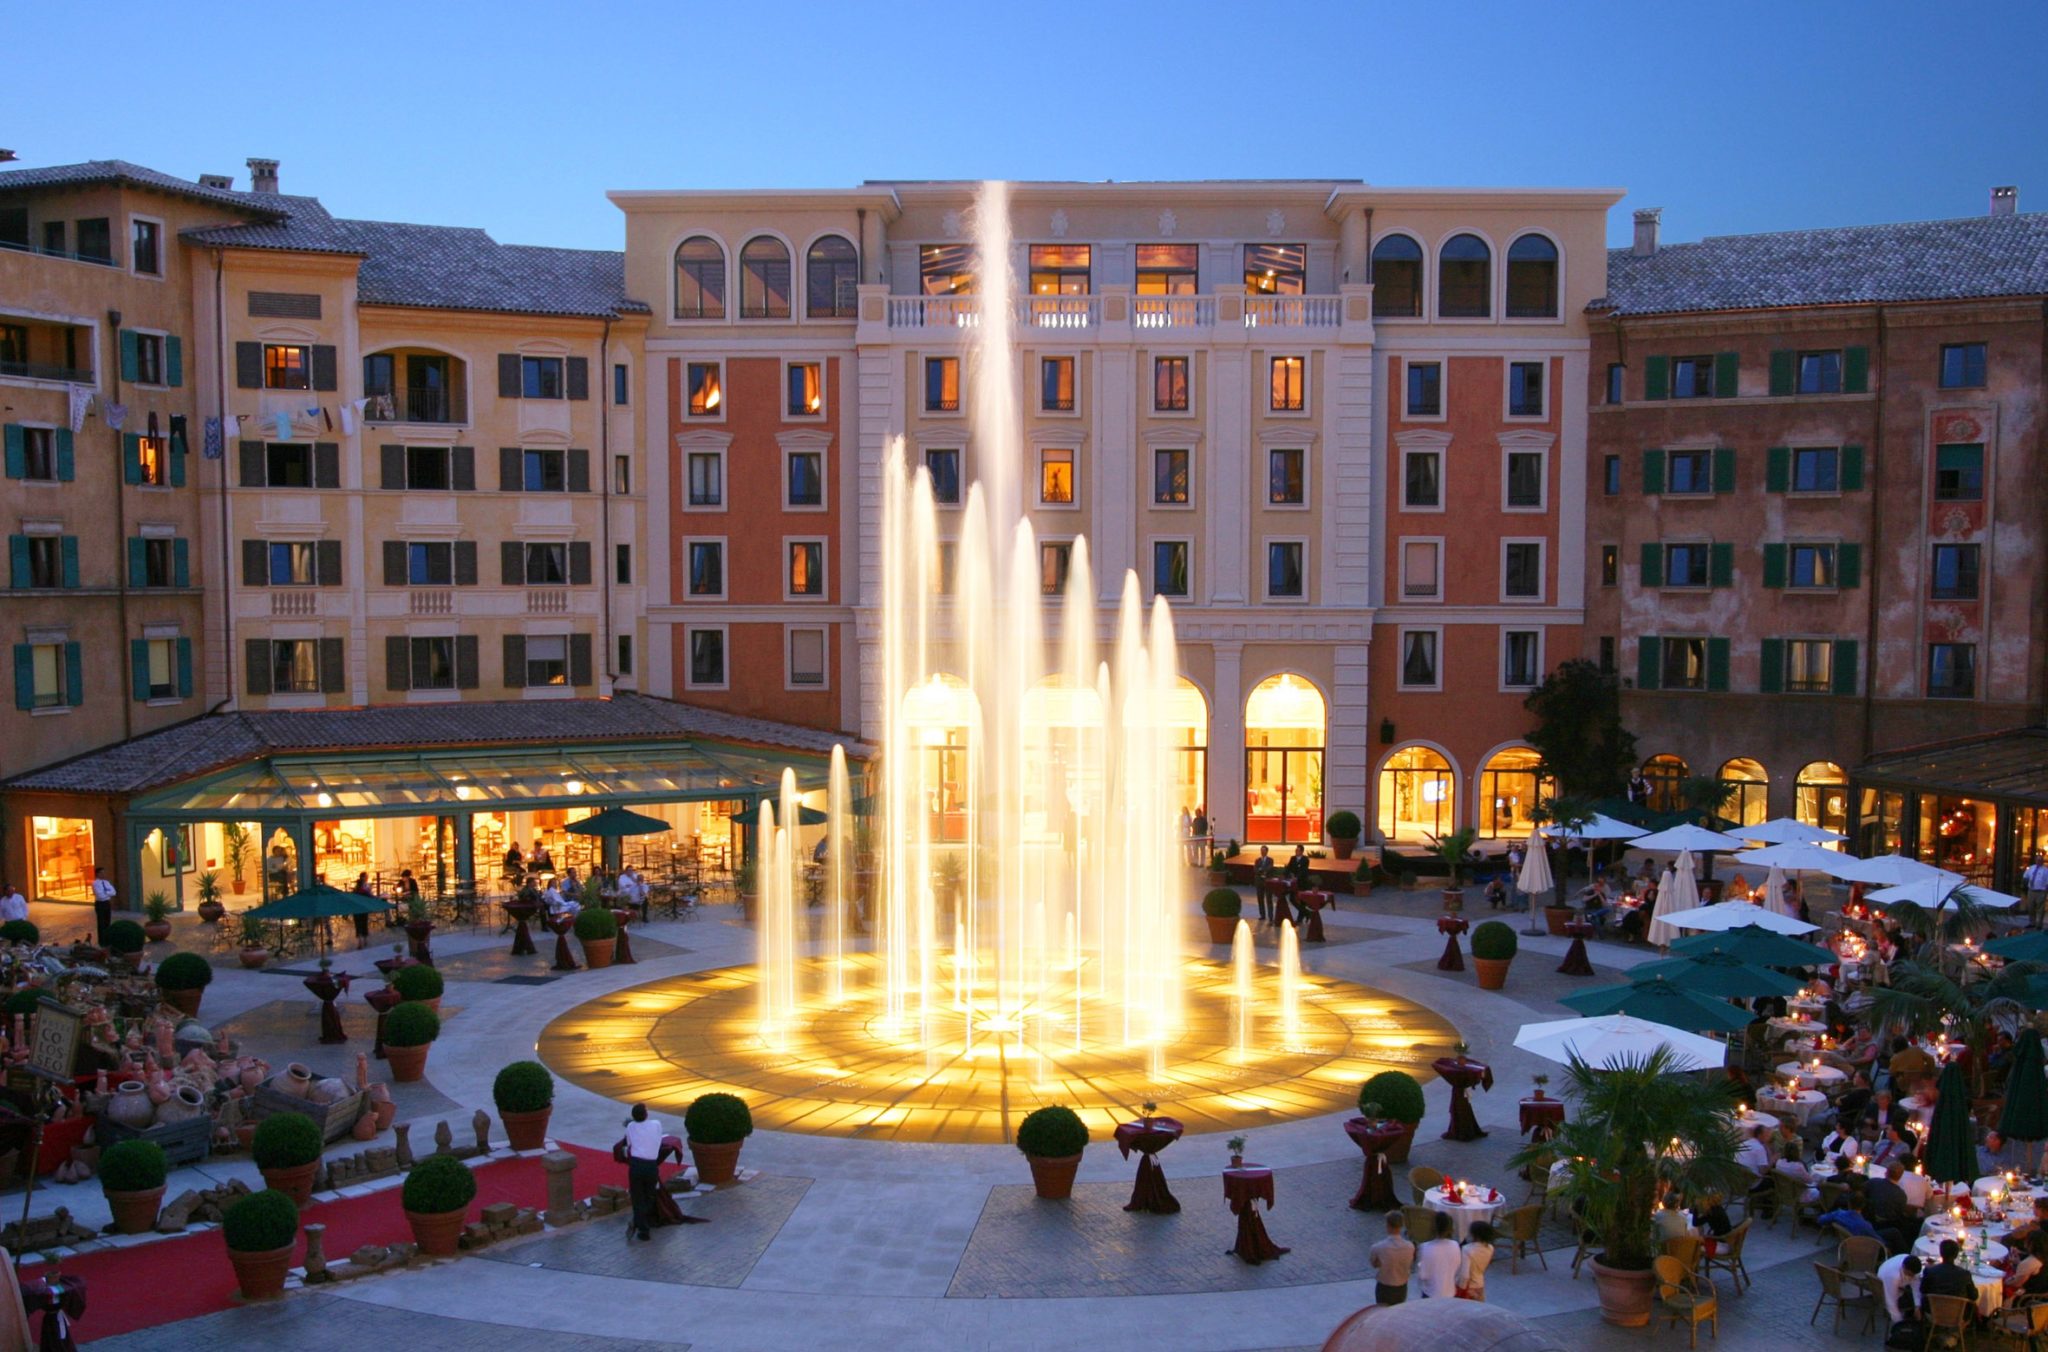 Blick auf die Plaza vor dem Hotel Colosseo © Europa Park